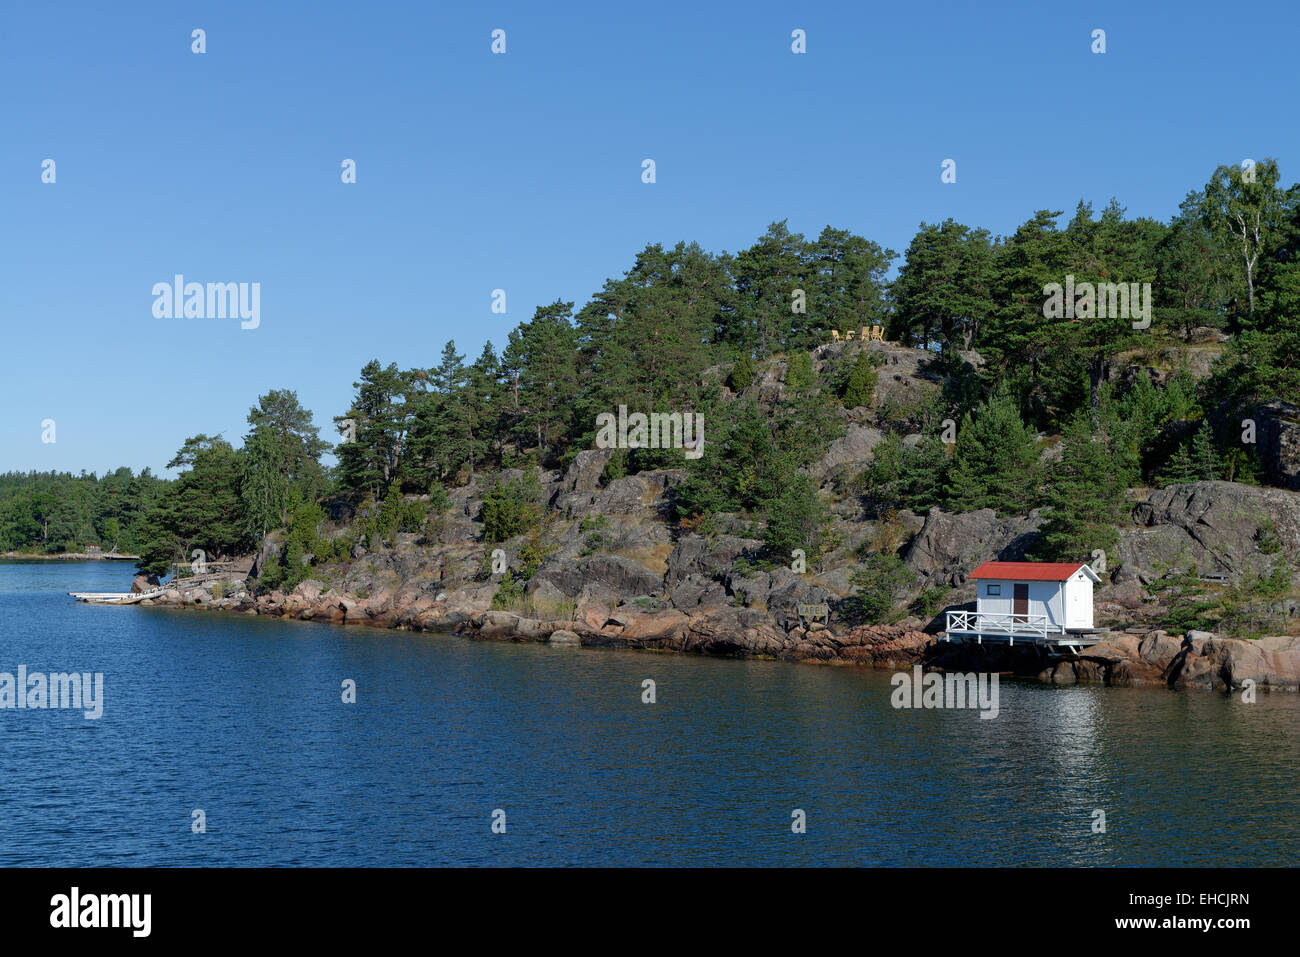 Waterfront cottage, Hallberg, Halleberg on Varholma, Värmdö archipelago, Sweden Stock Photo